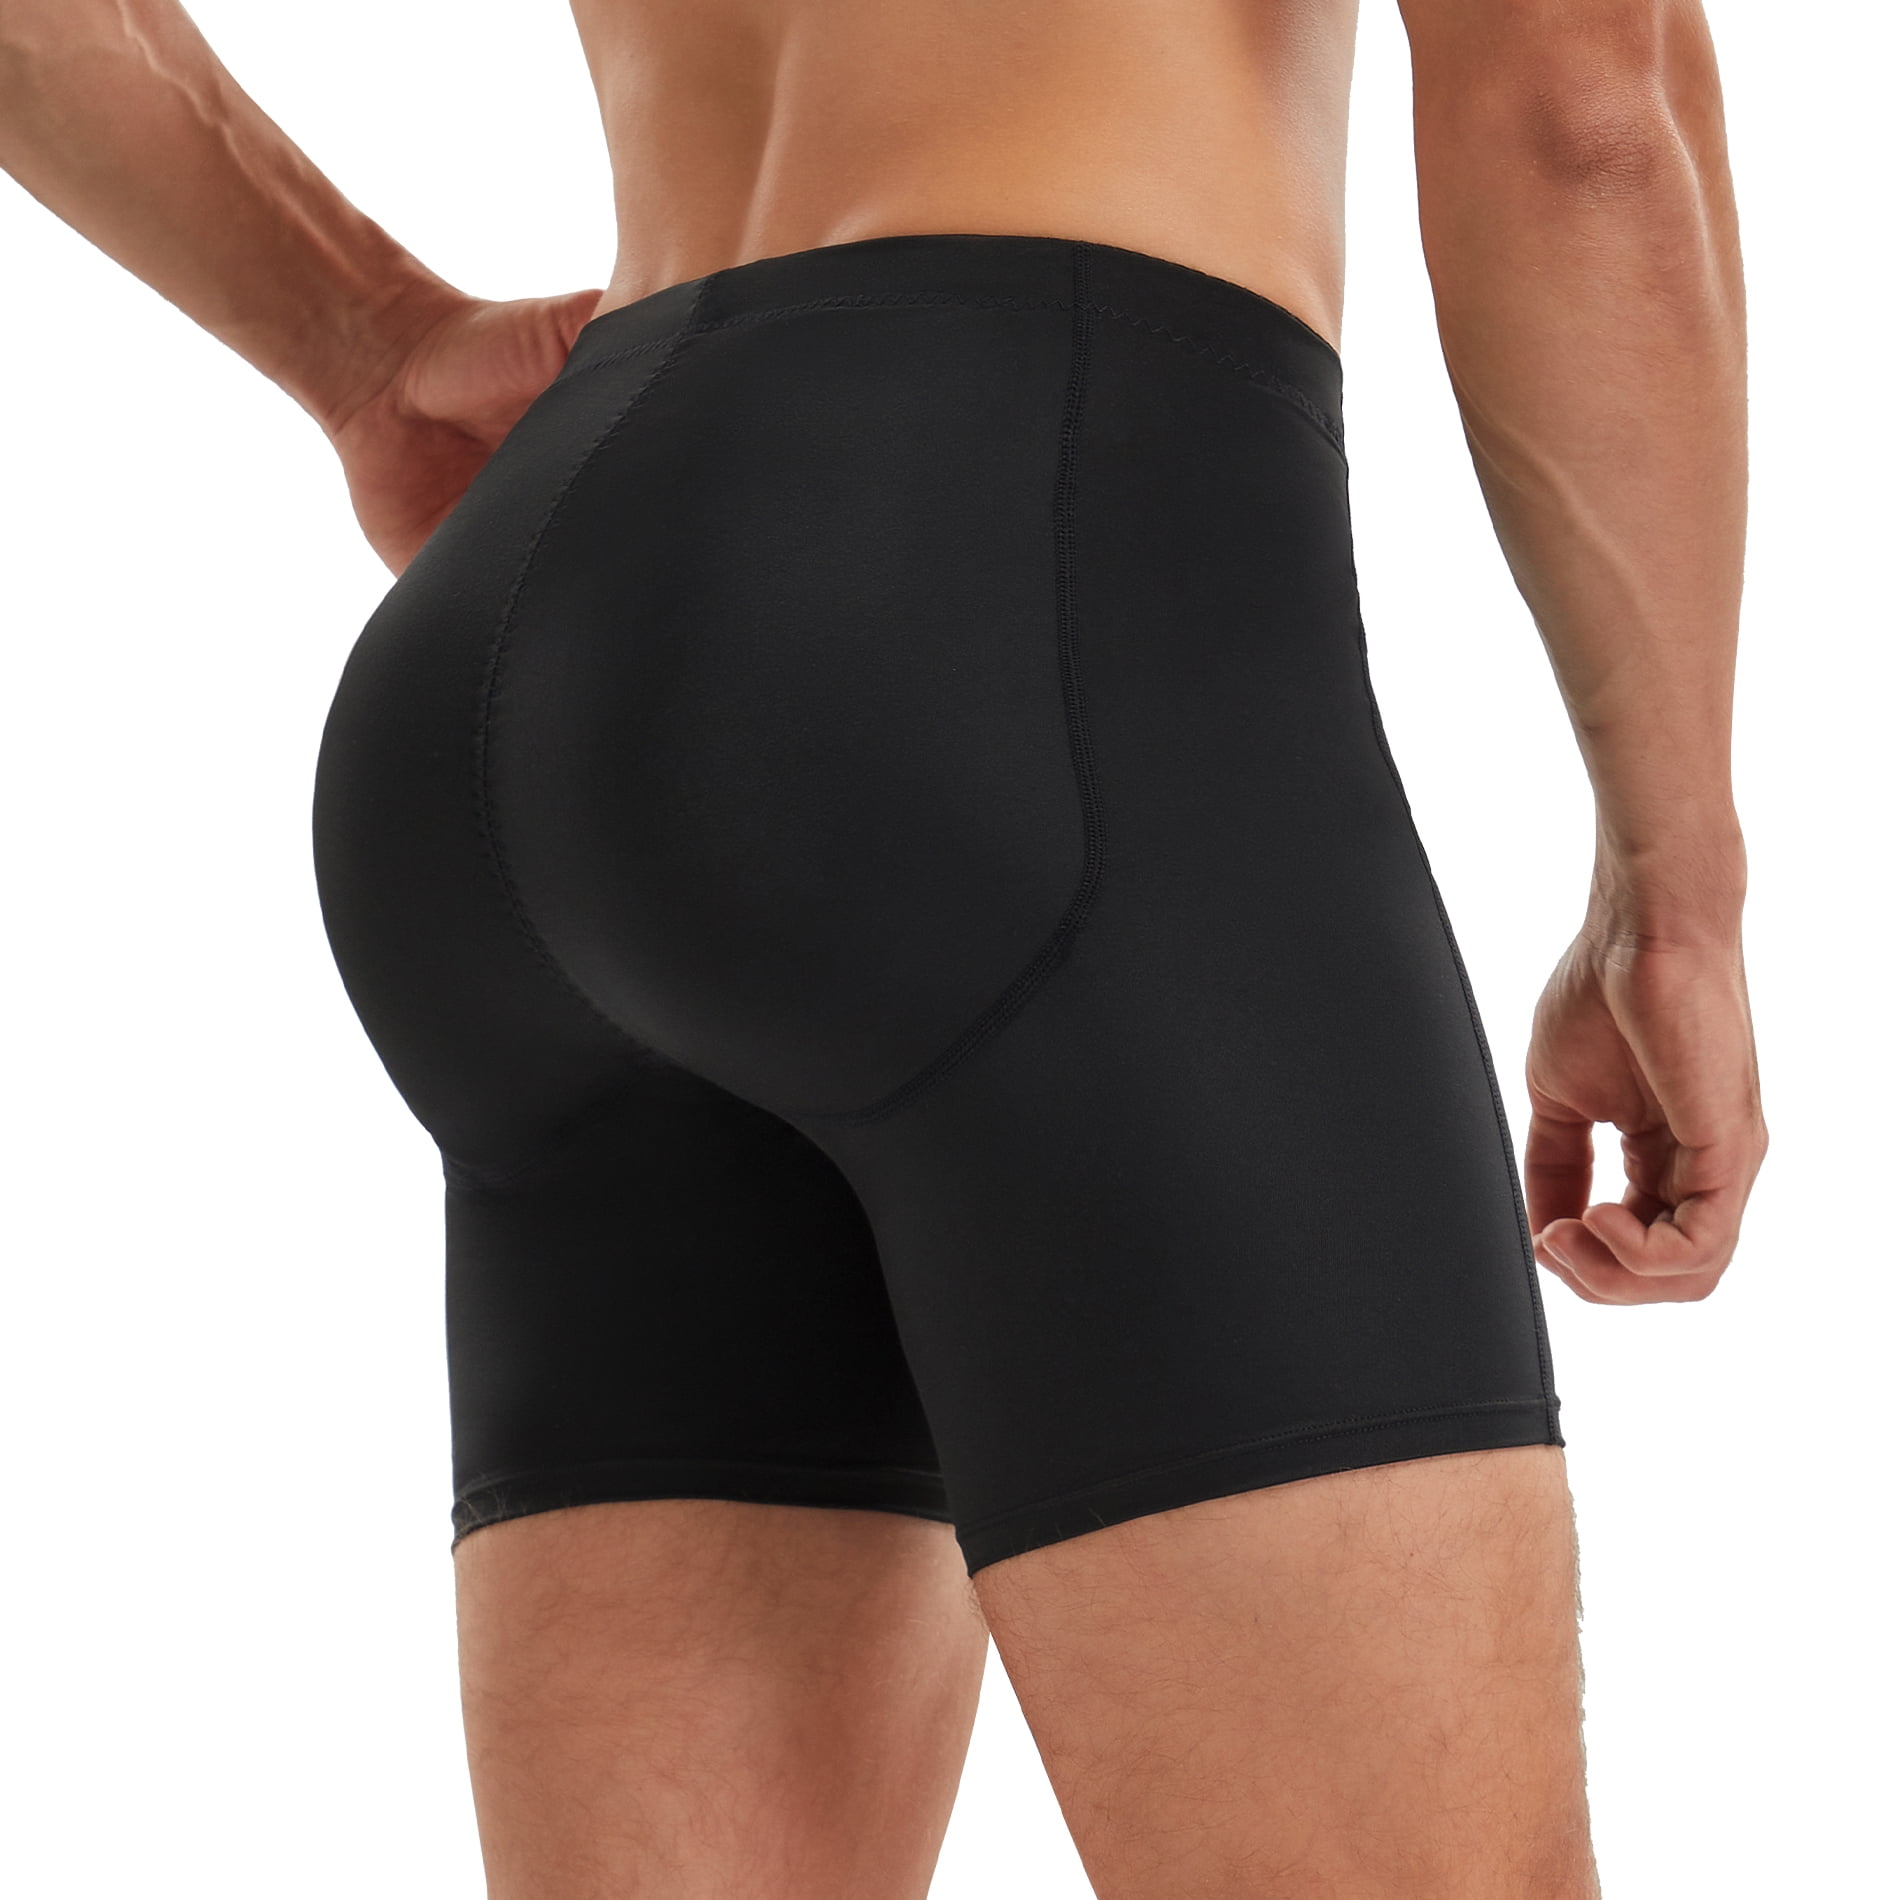 Men Shapewear Padded Butt Lifter Boxer Shorts Underwear Body